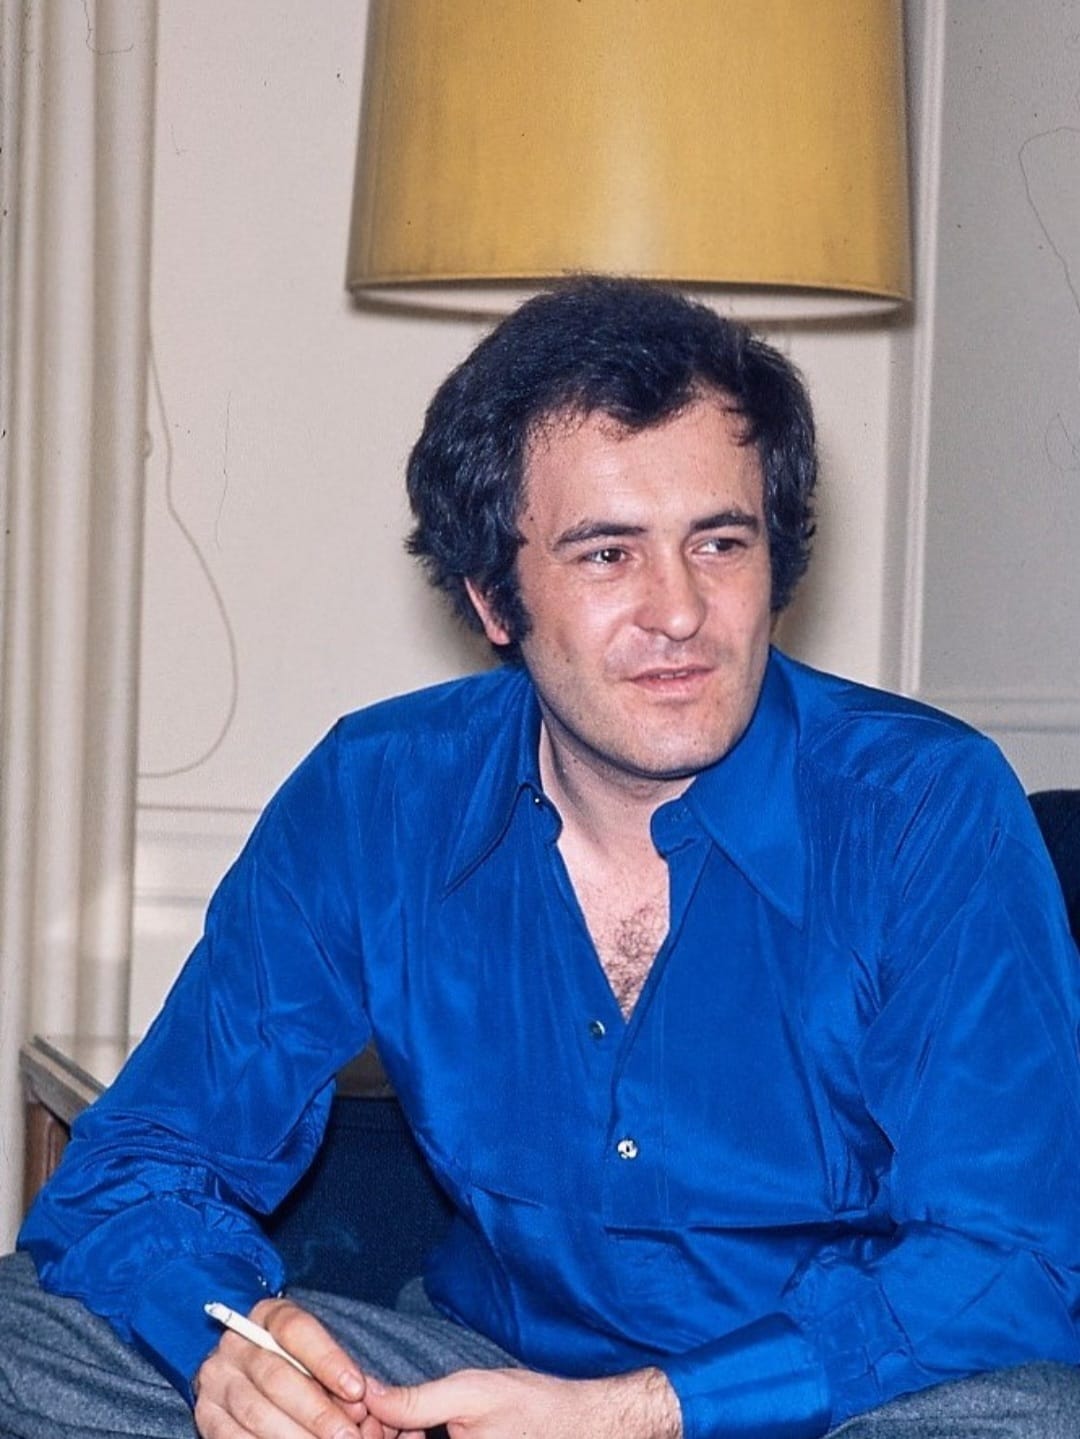 הבמאי האיטלקי הנודע ברנרדו ברטולוצ’י מת ב-26 בנובמבר 2018 בגיל 77 ברומא